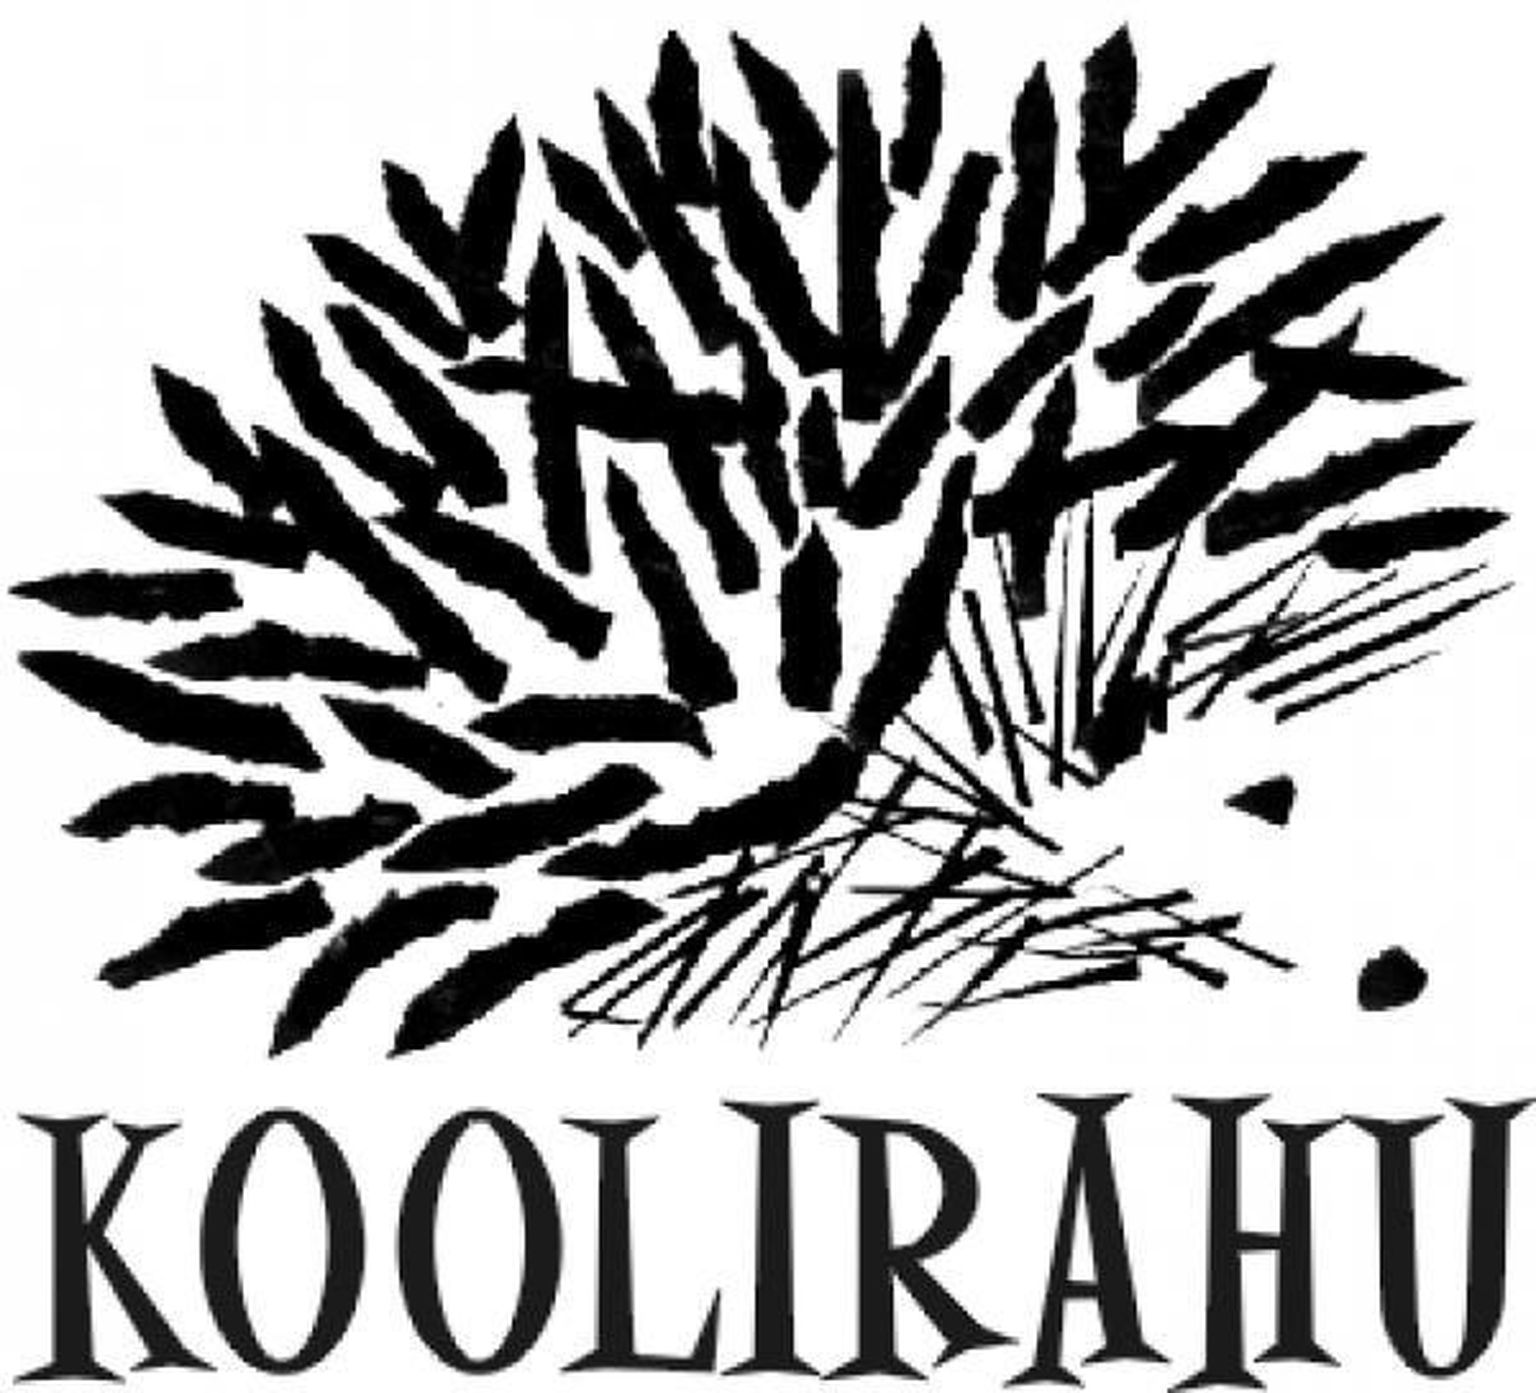 Koolirahu logo.